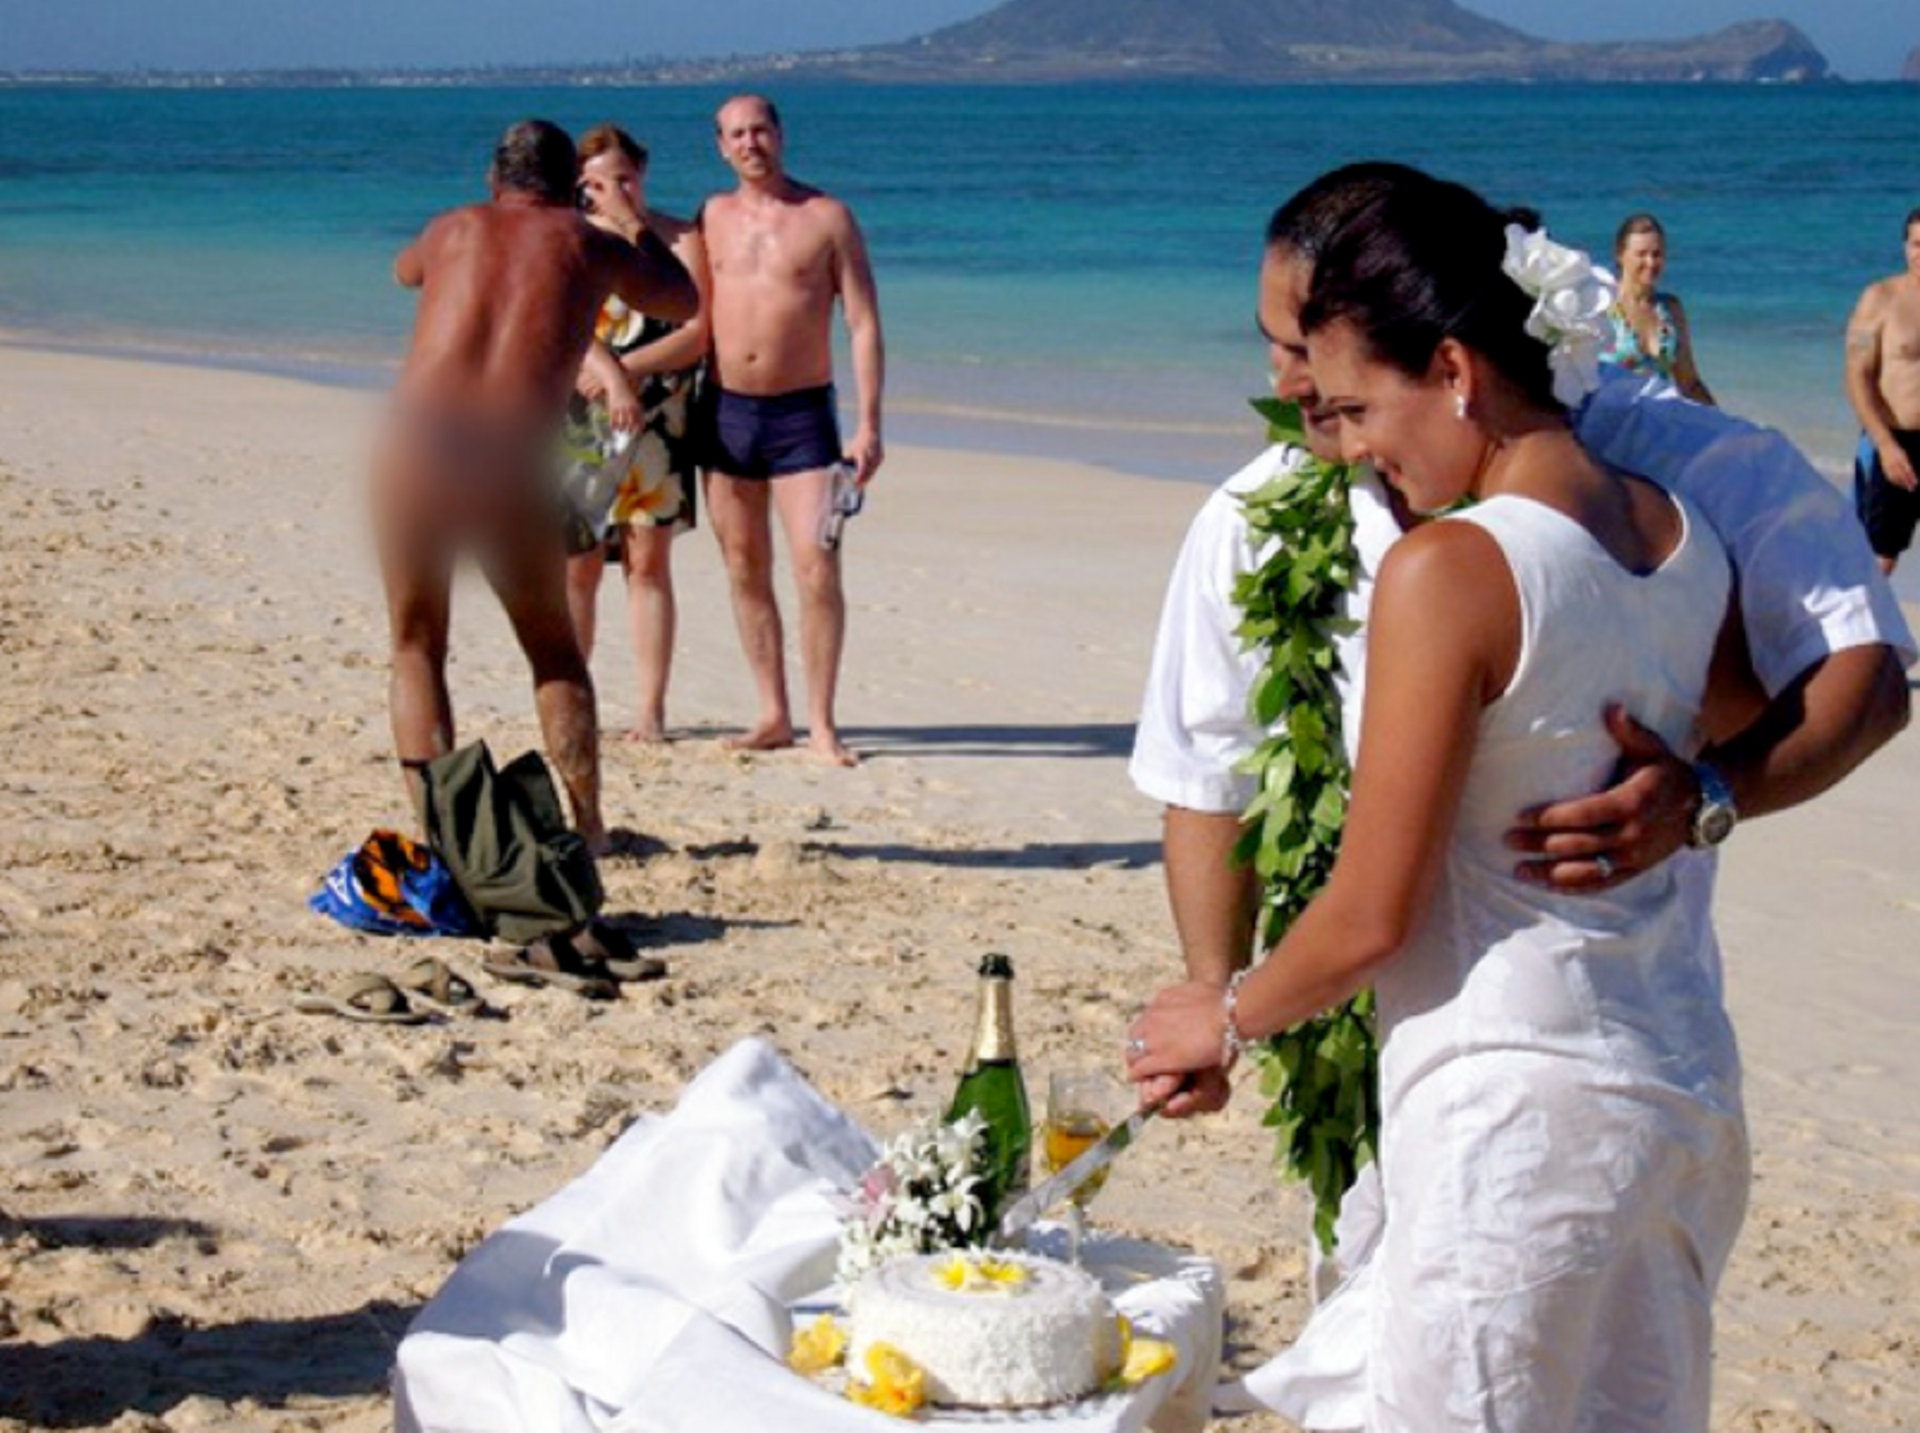 Svatba na pláži asi nebyl úplně nejlepší nápad.